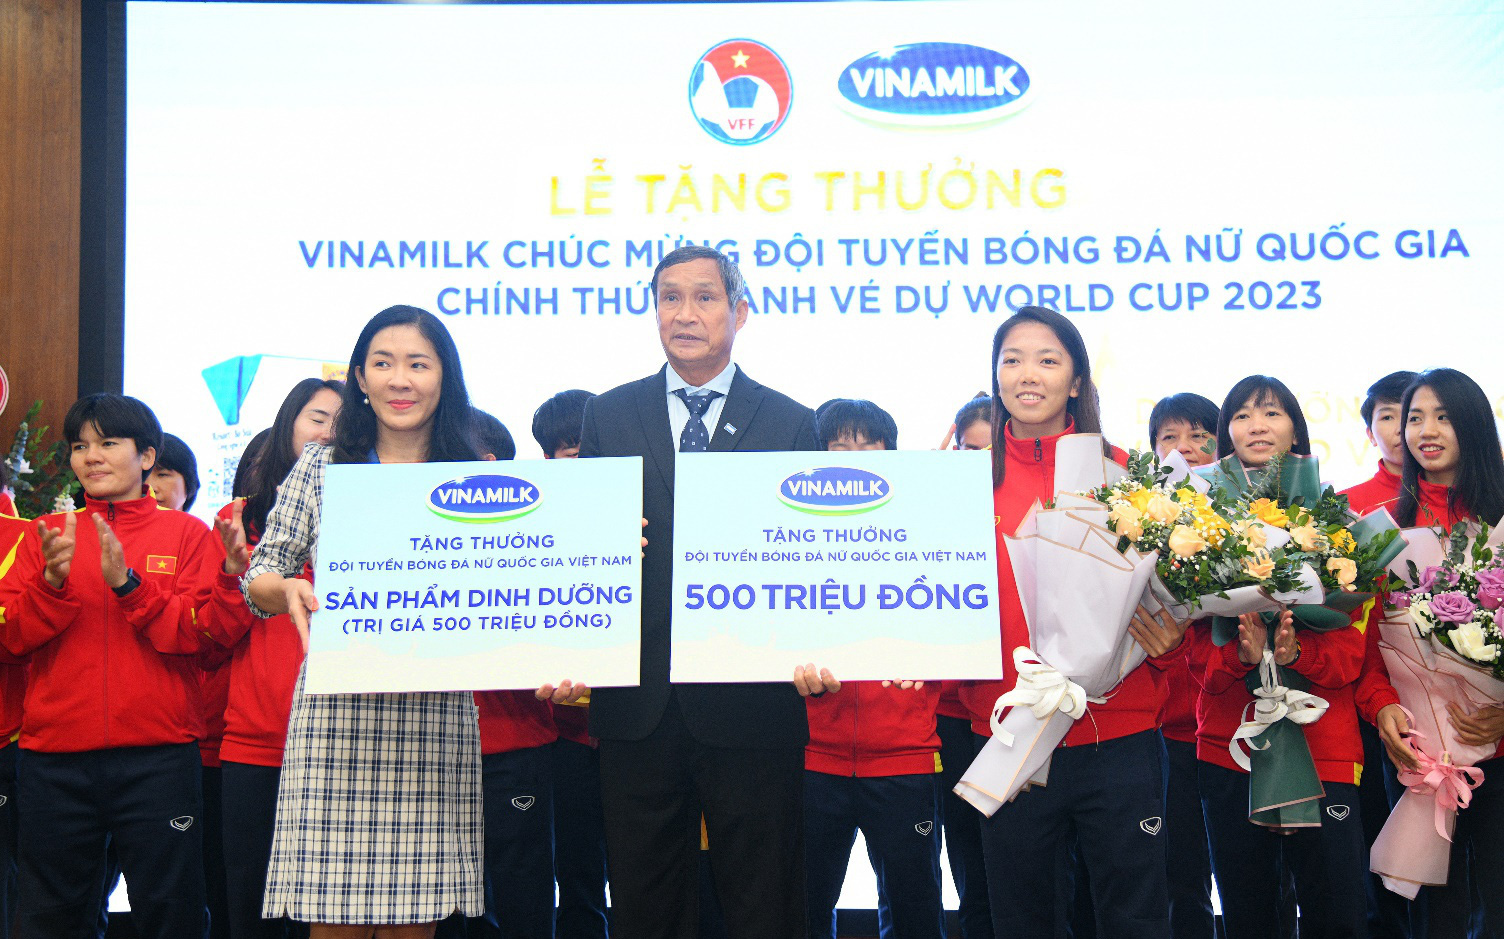 Vinamilk trao thưởng 500 triệu tiền mặt và 2 năm sử dụng sản phẩm để chúc mừng thành tích đội tuyển bóng đá nữ quốc gia